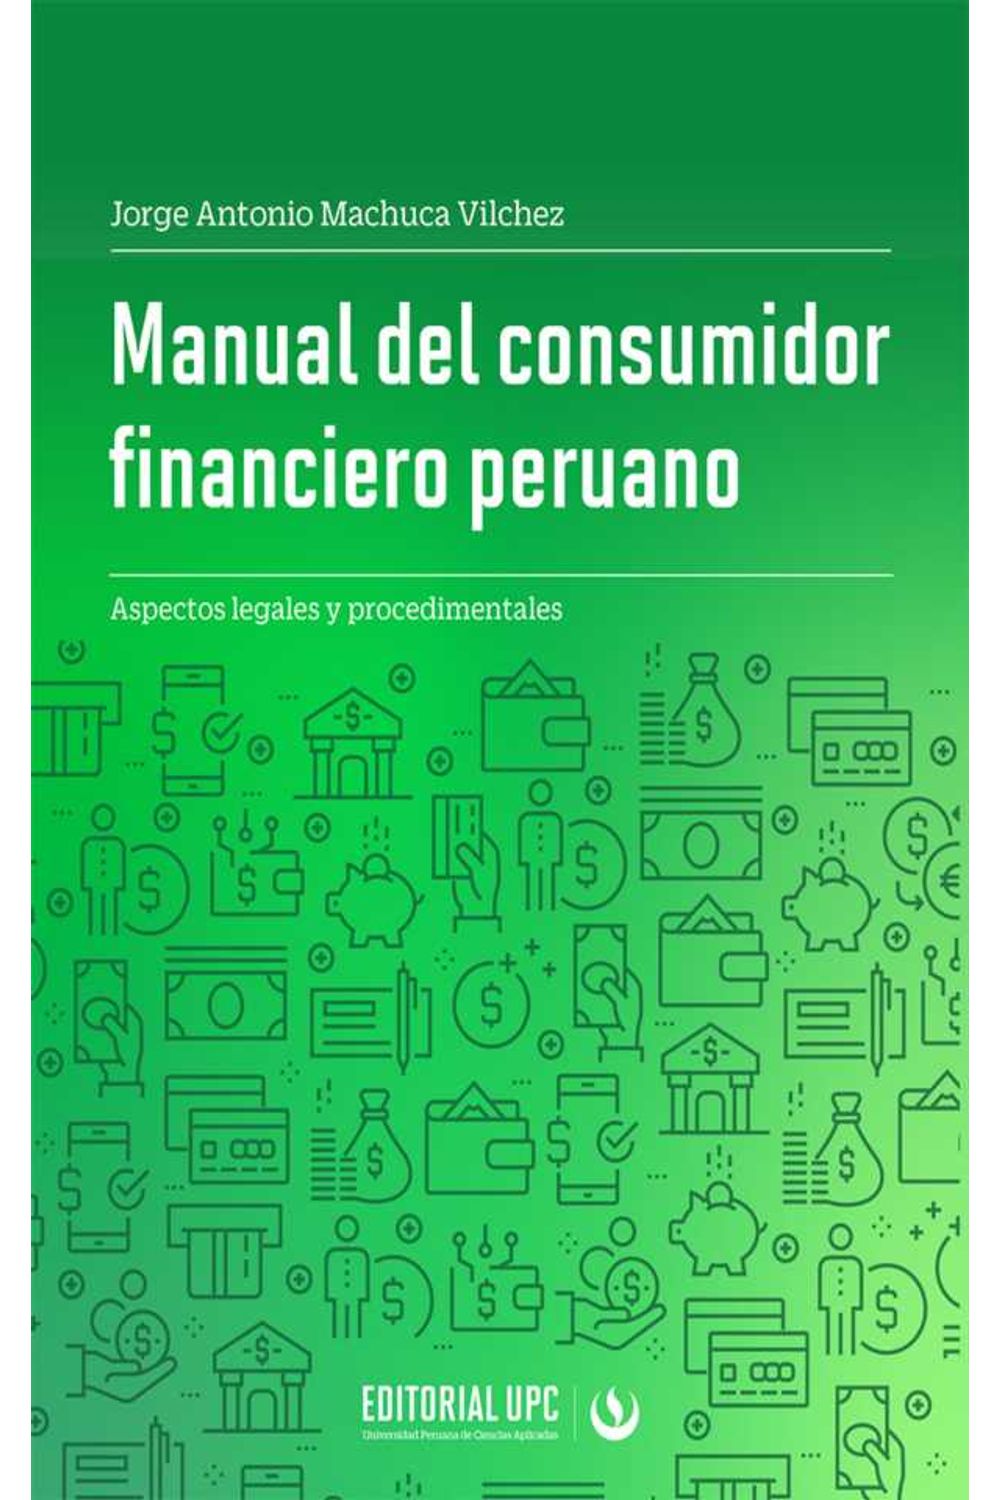 bw-manual-del-consumidor-financiero-peruano-editorial-upc-9786123183233